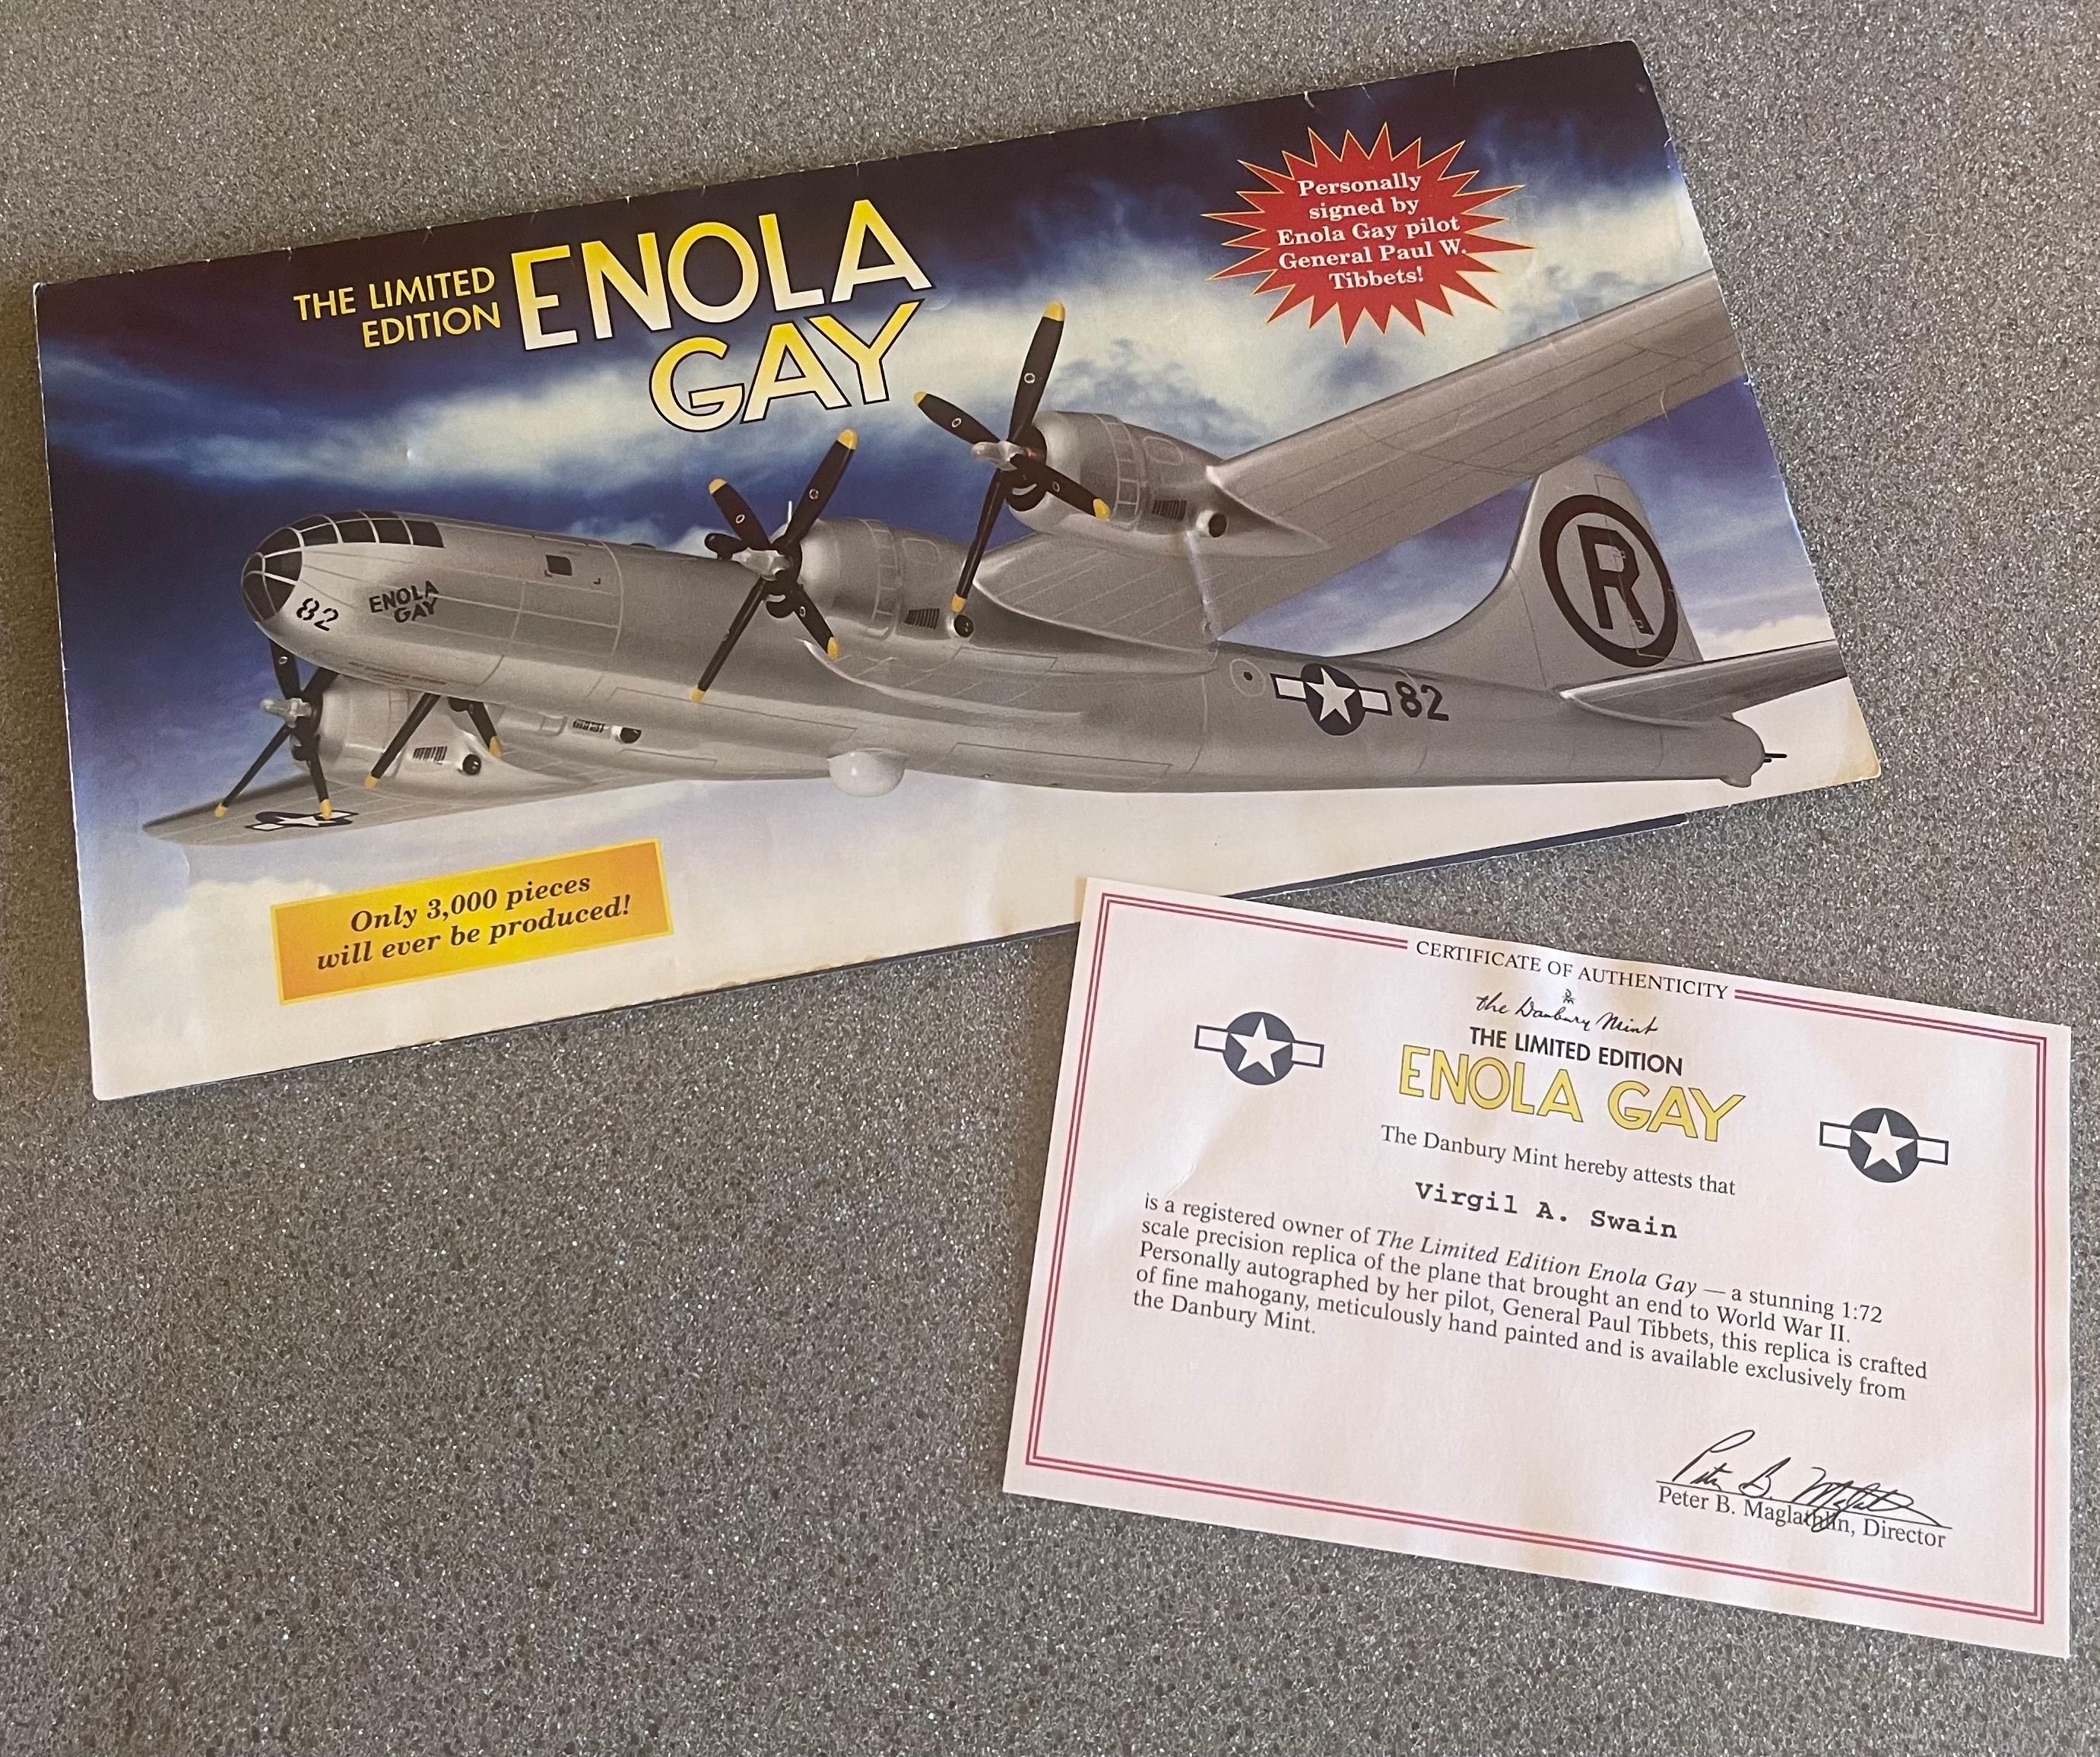 Modèle réduit du bombardier B-29 Enola Gay, signé par le pilote Paul Tibbetts WW II en vente 3